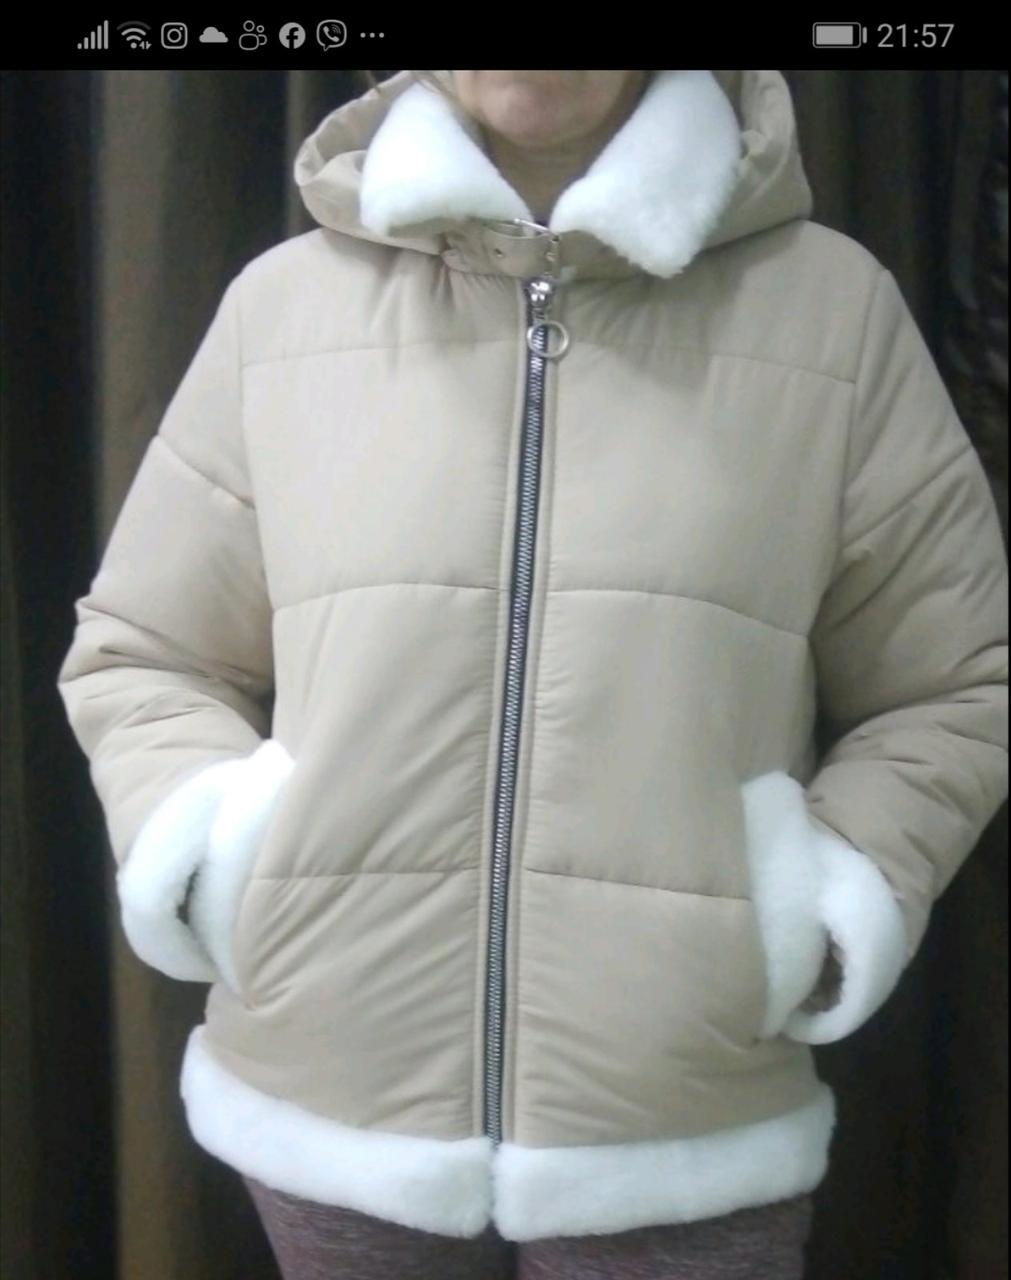 Куртка жіноча зимова бежева молодіжна з капюшоном.
Розмір 50.
Оздоблення екохутра.